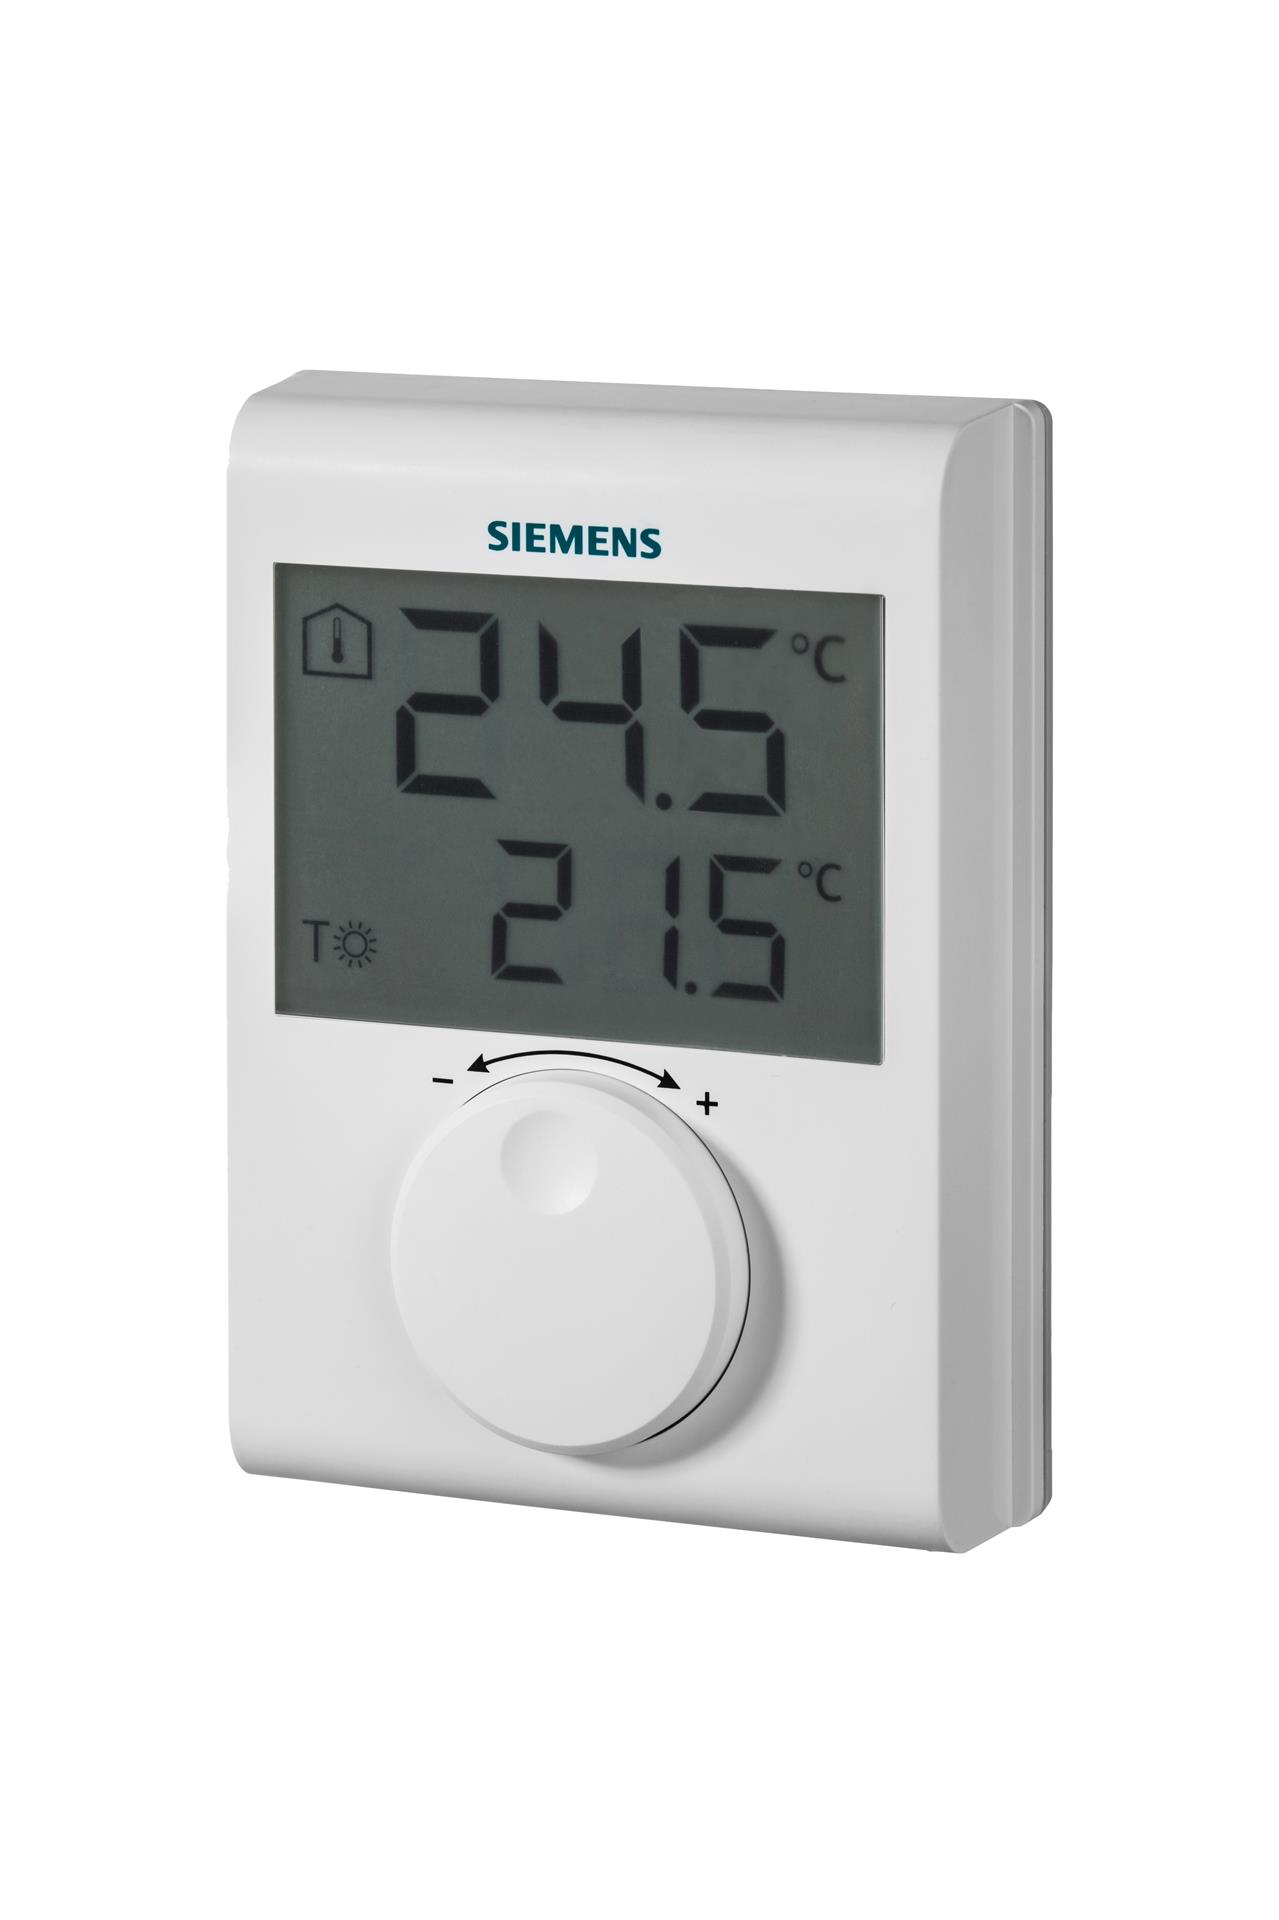 RDH100 | S55770-T377 SIEMENS Автономные комнатные термостаты цена, купить